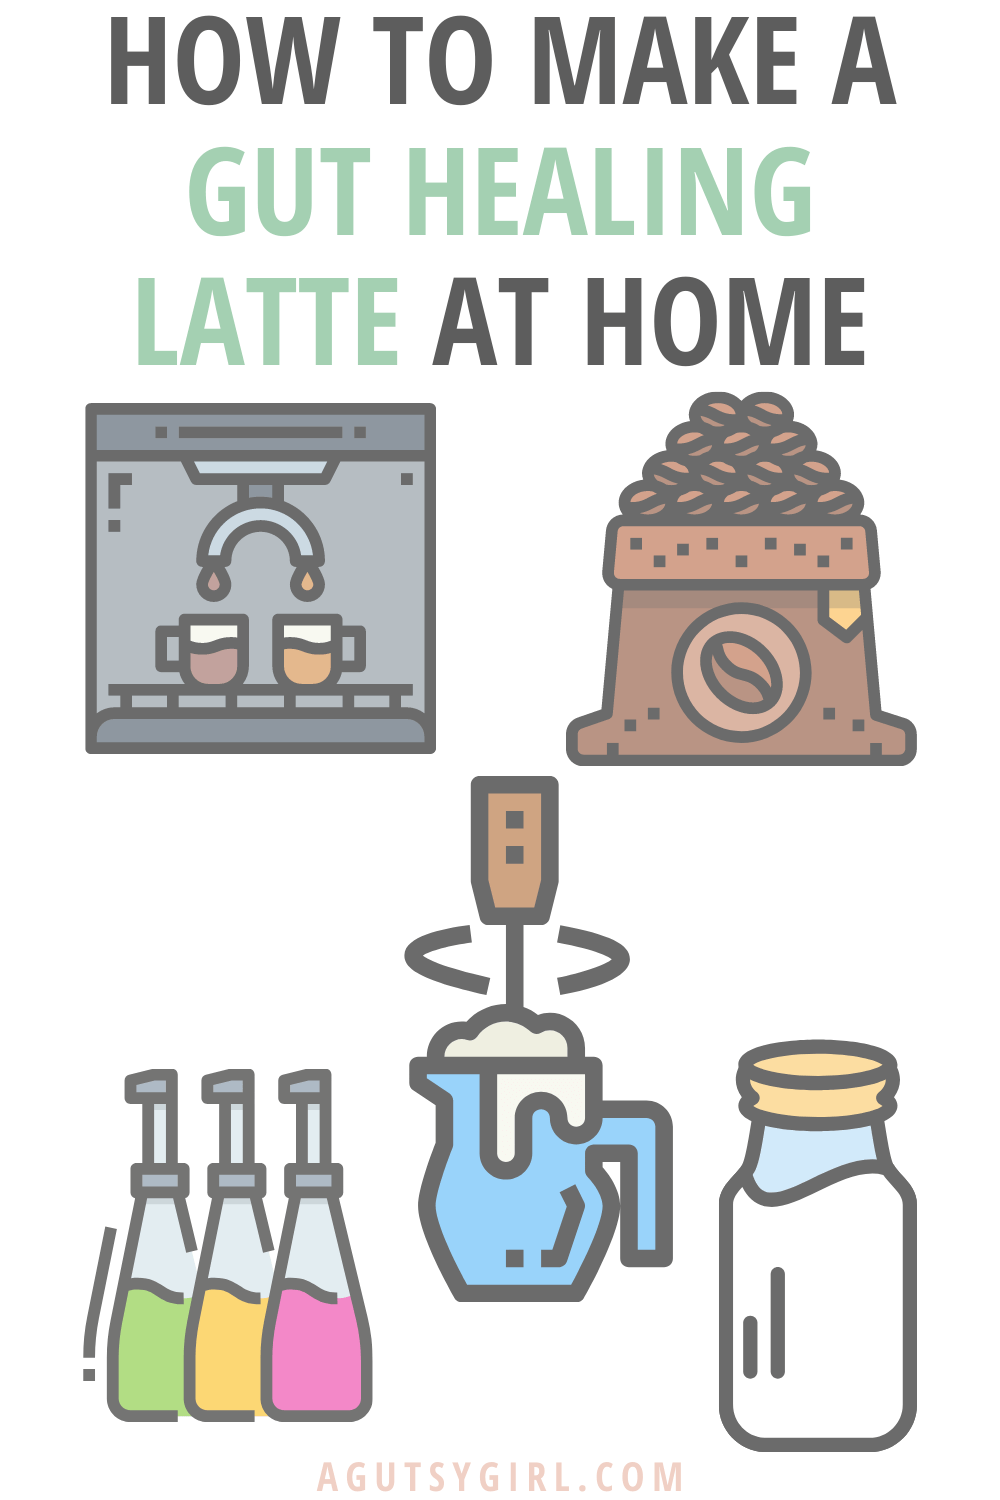 How to Make a Gut Healing Latte at home agutsygirl.com #lattes #guthealing #diylatte